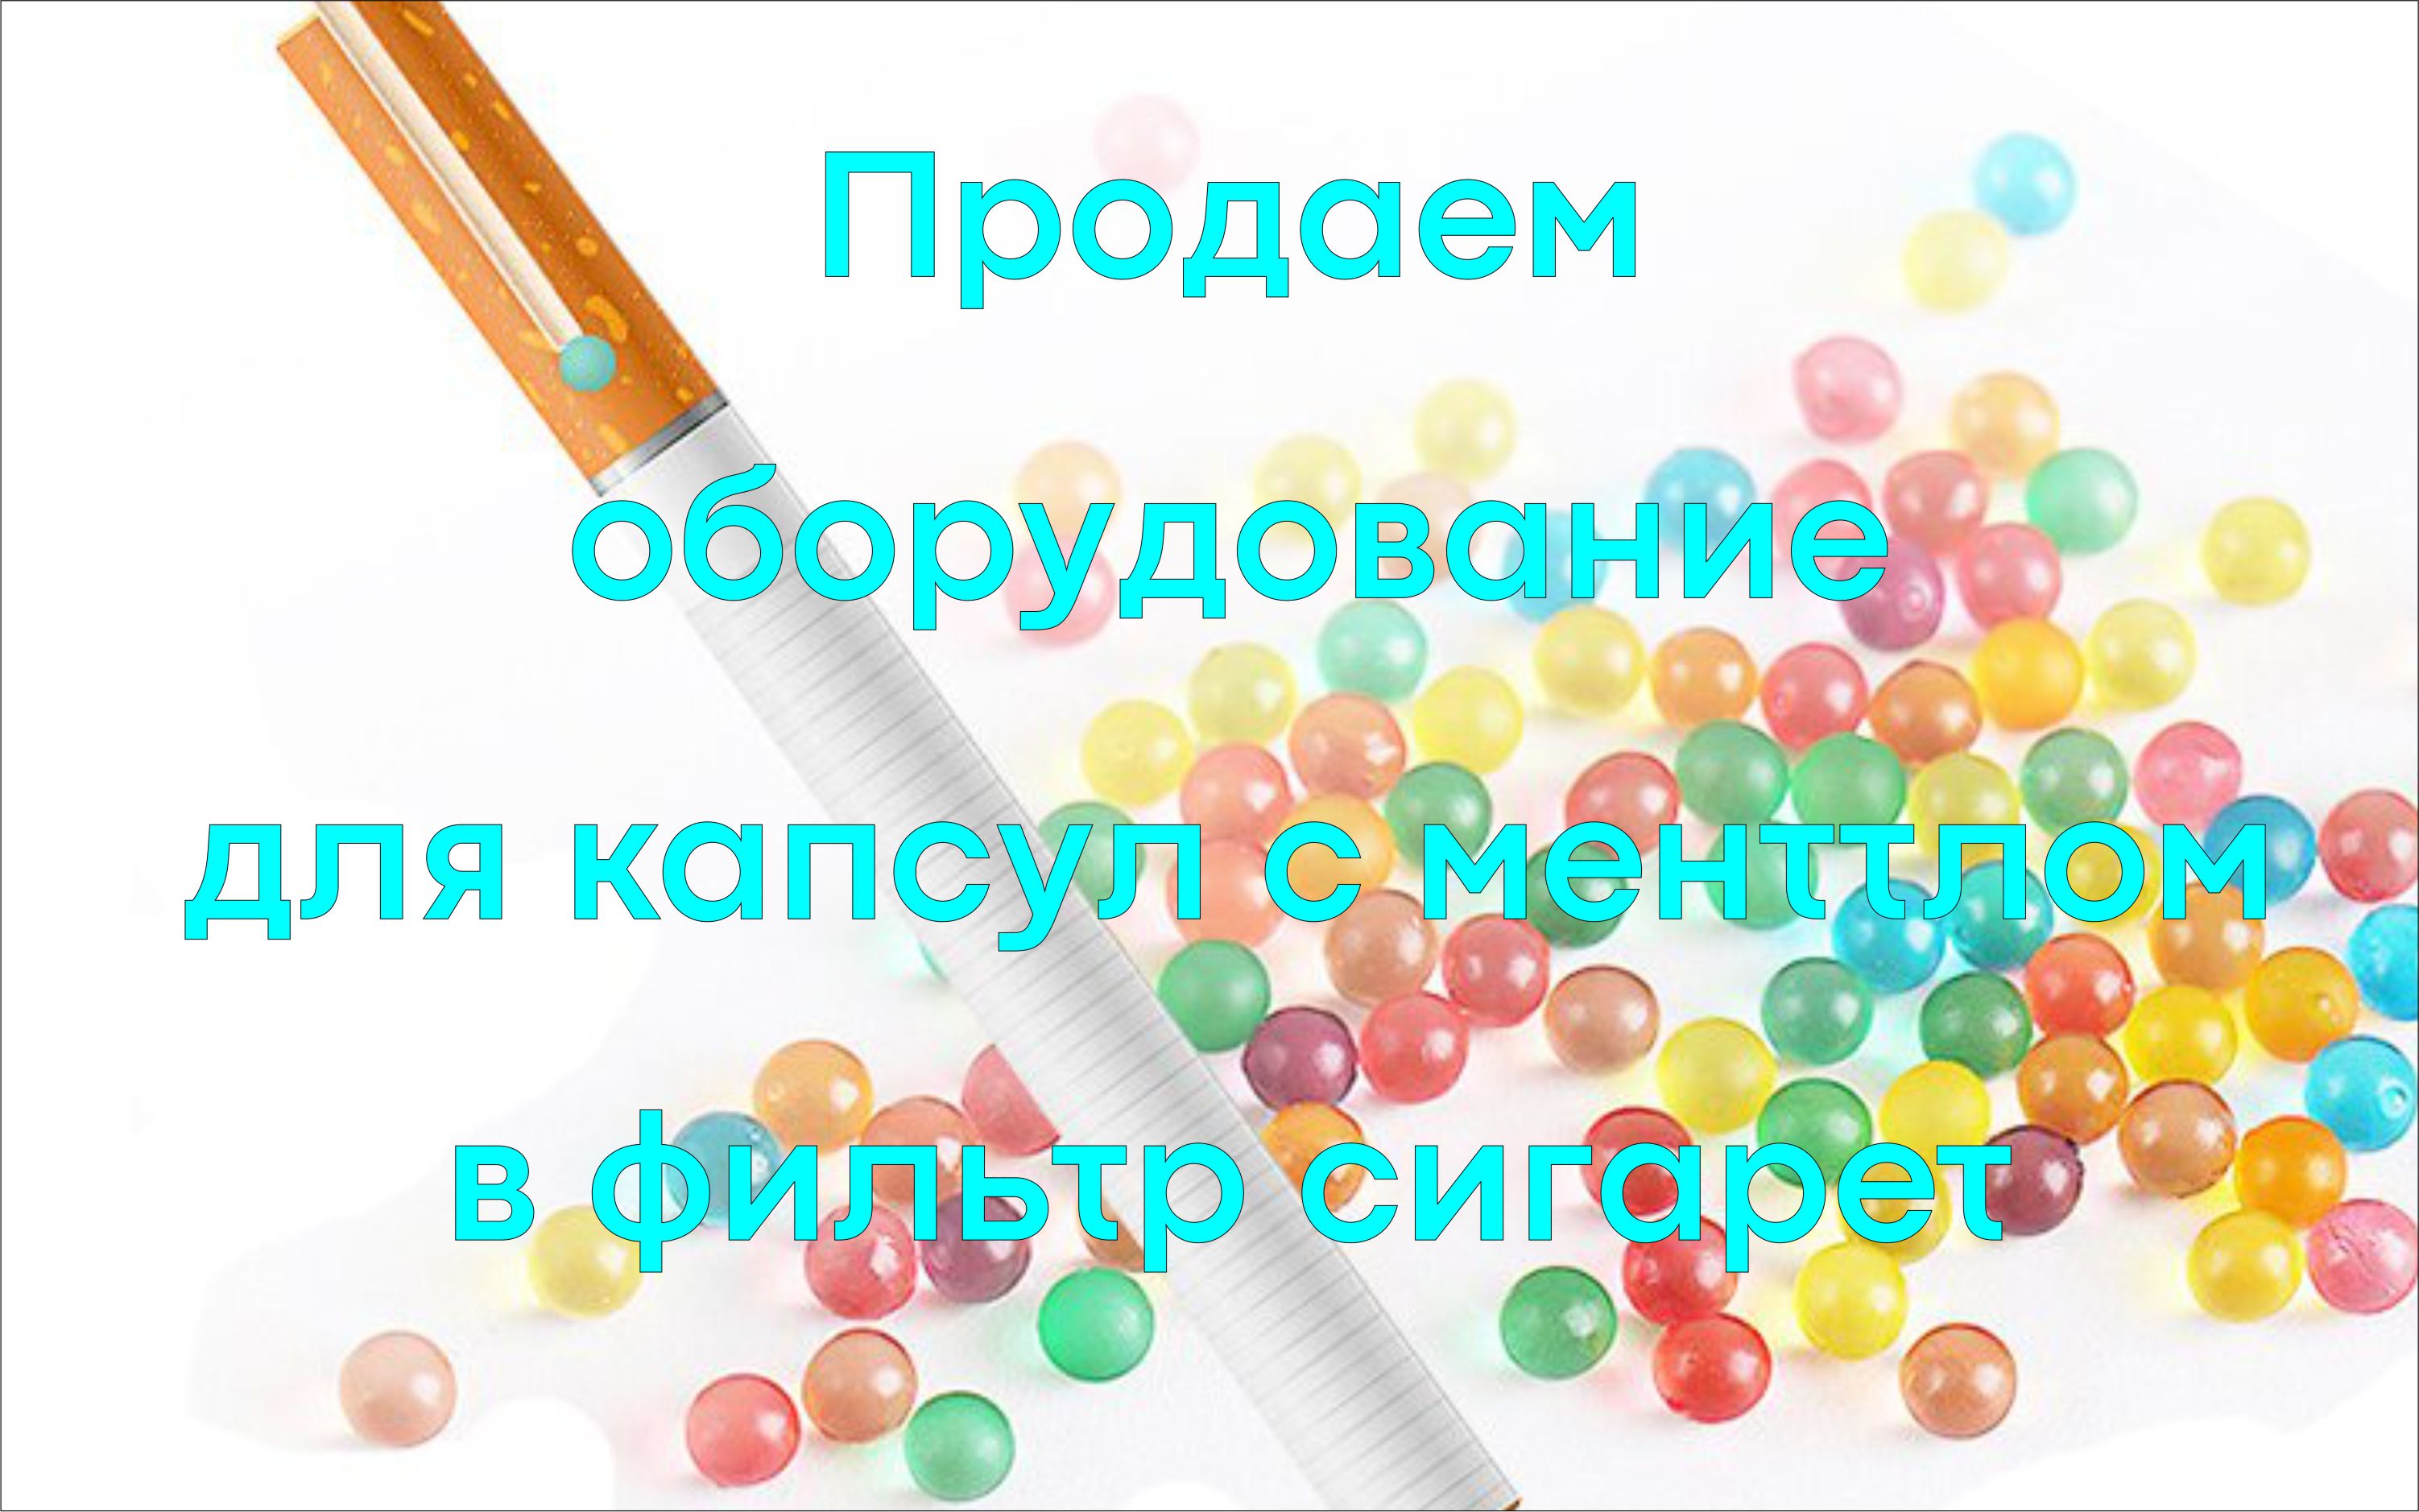 www.Kapsulator.ru Capsulator soft seamless capsules with a shell of gelatin, agar, alginate